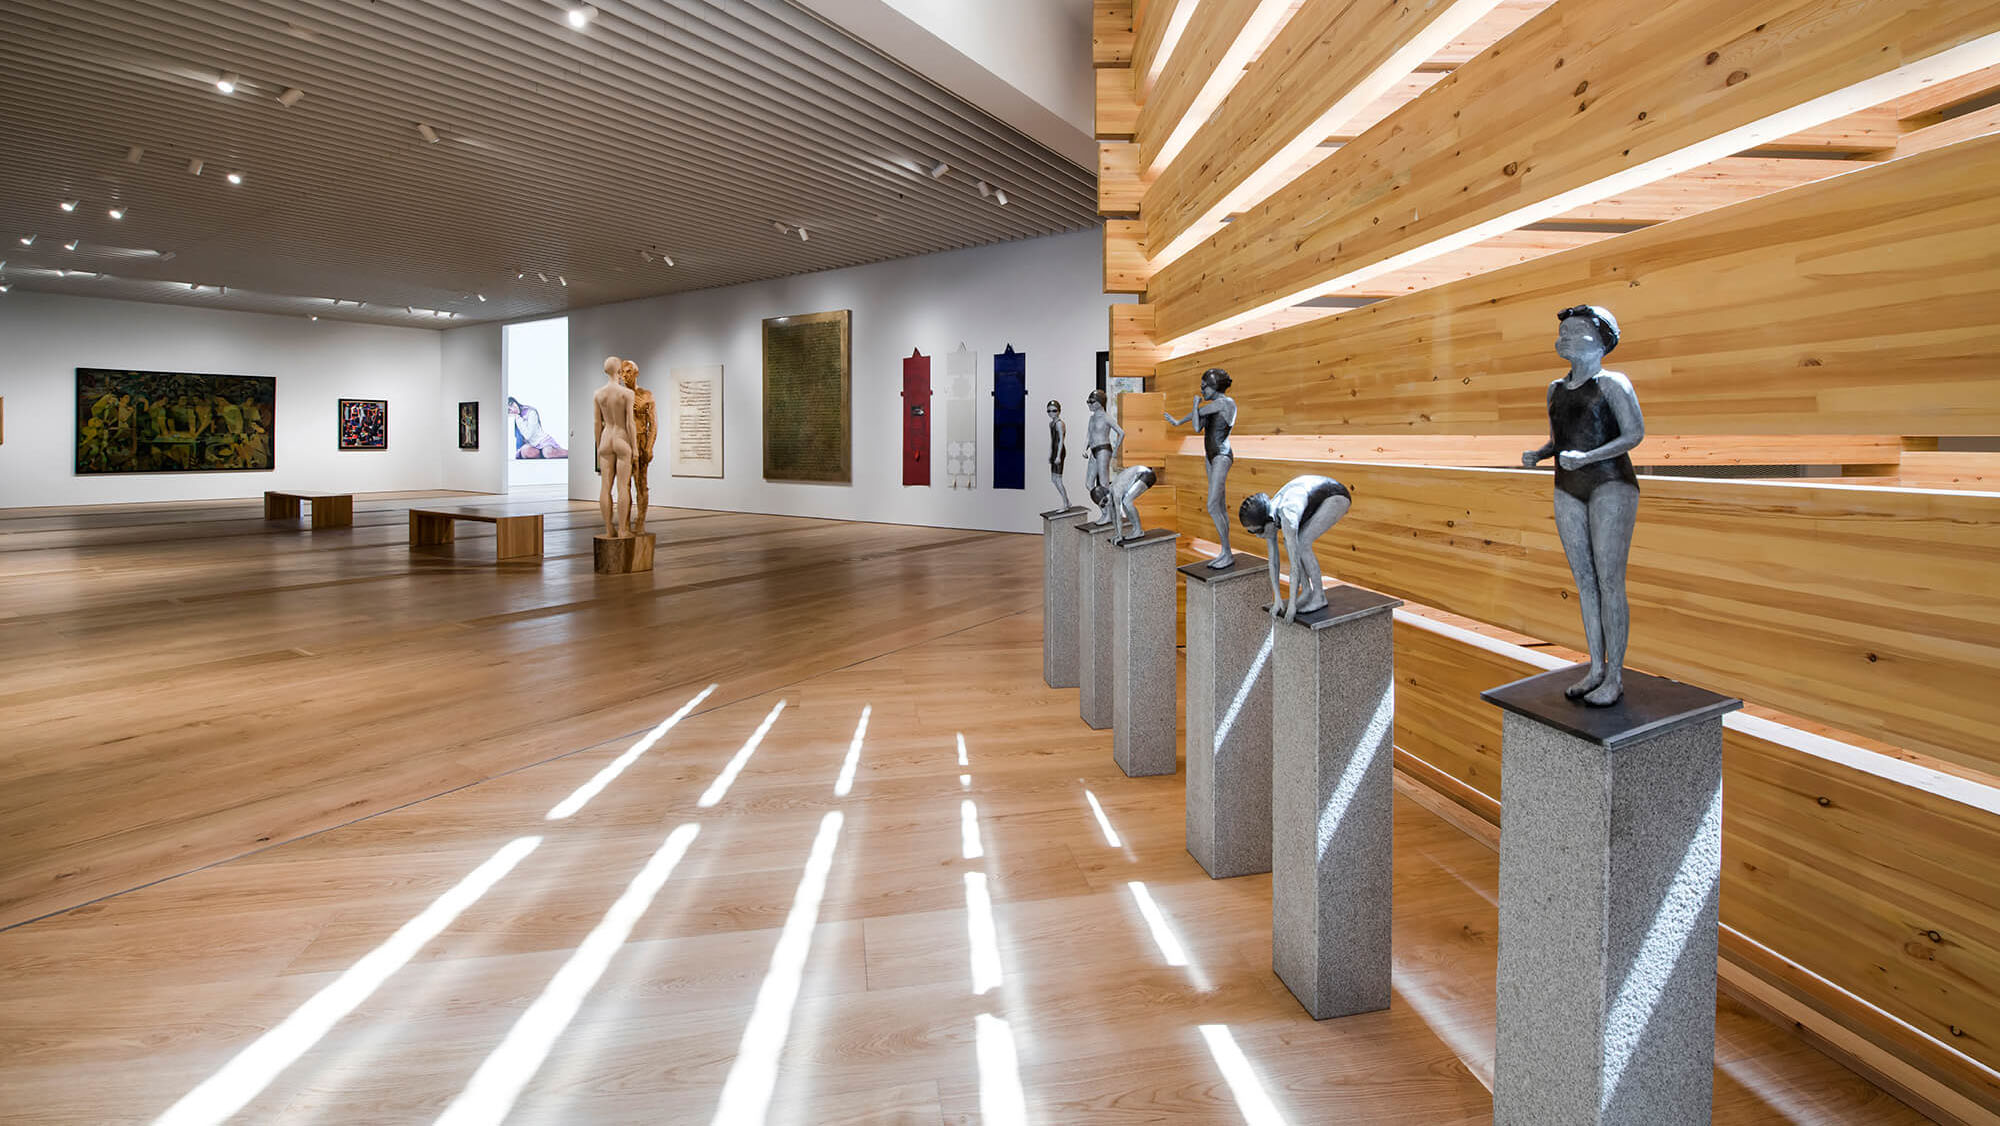 OMM - Odunpazarı Modern Müze, sergi alanından genel görünüm. Fotoğraf: Kayhan Kaygusuz